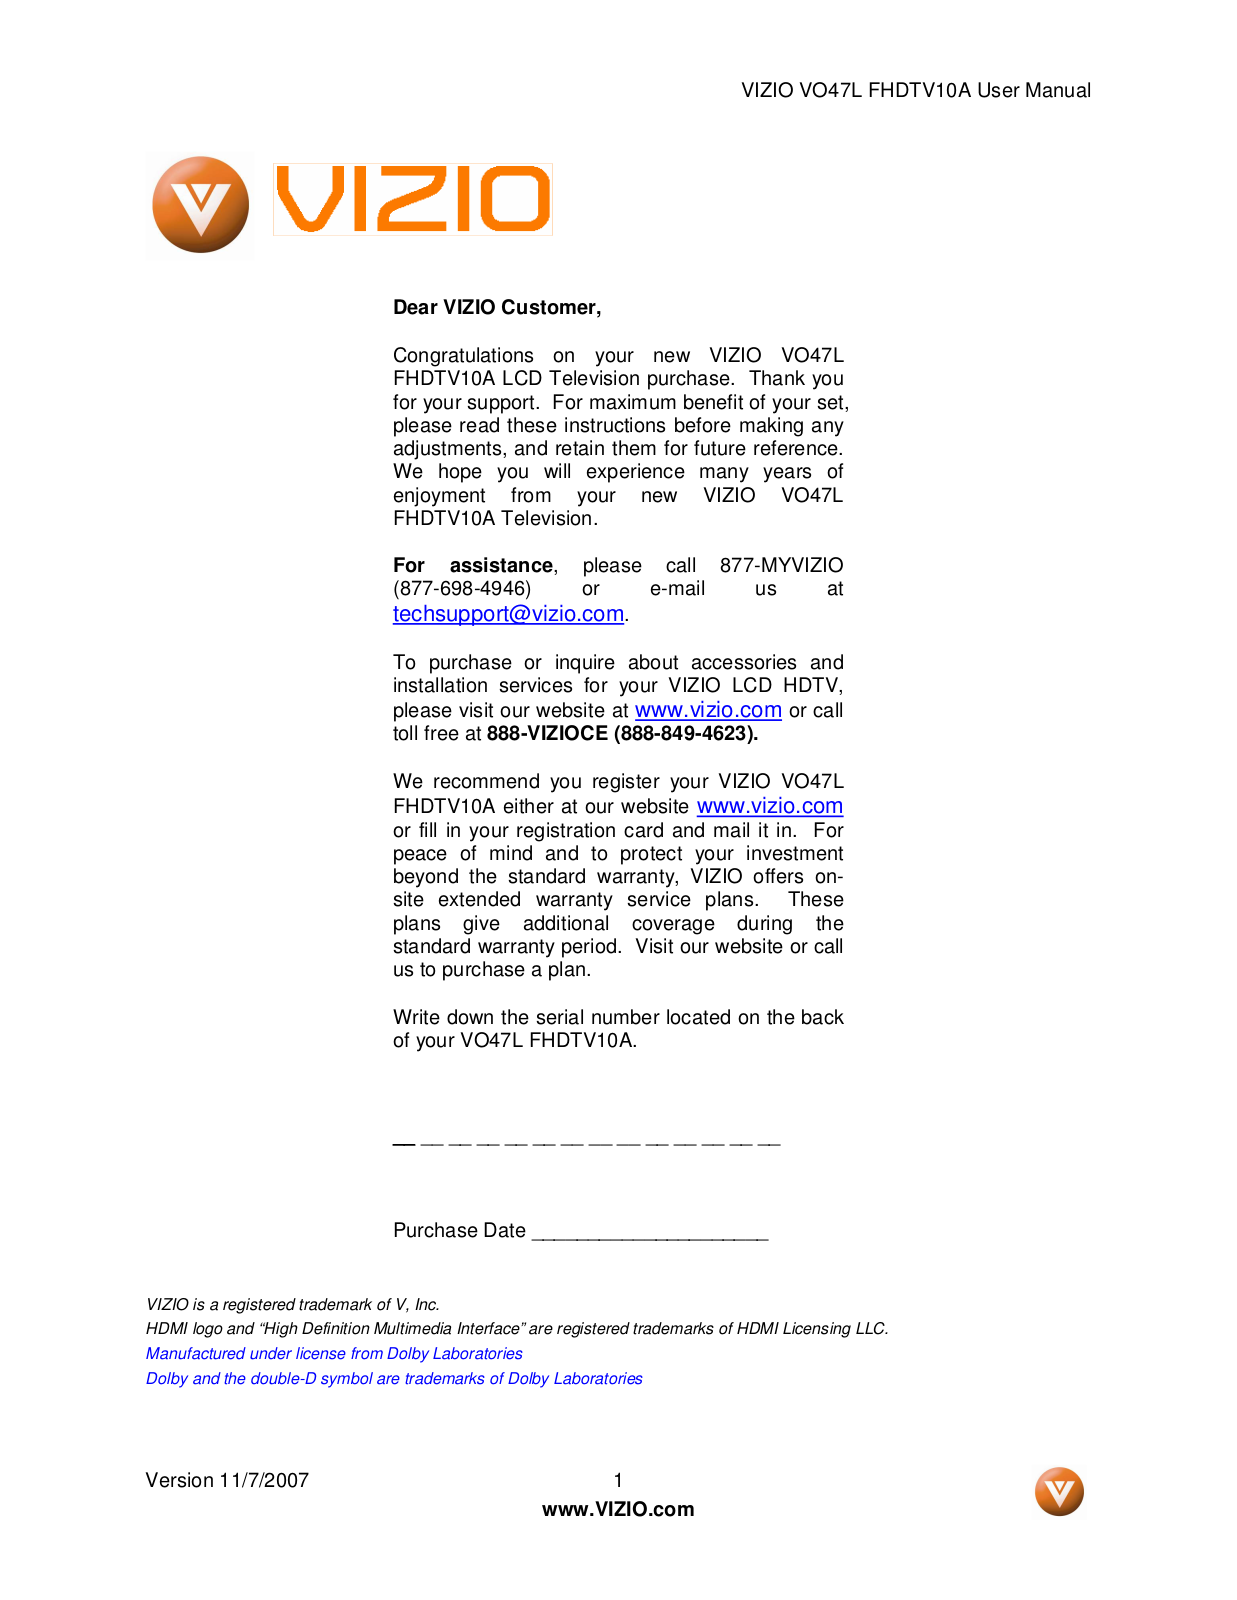 Vizio VO47L User Manual